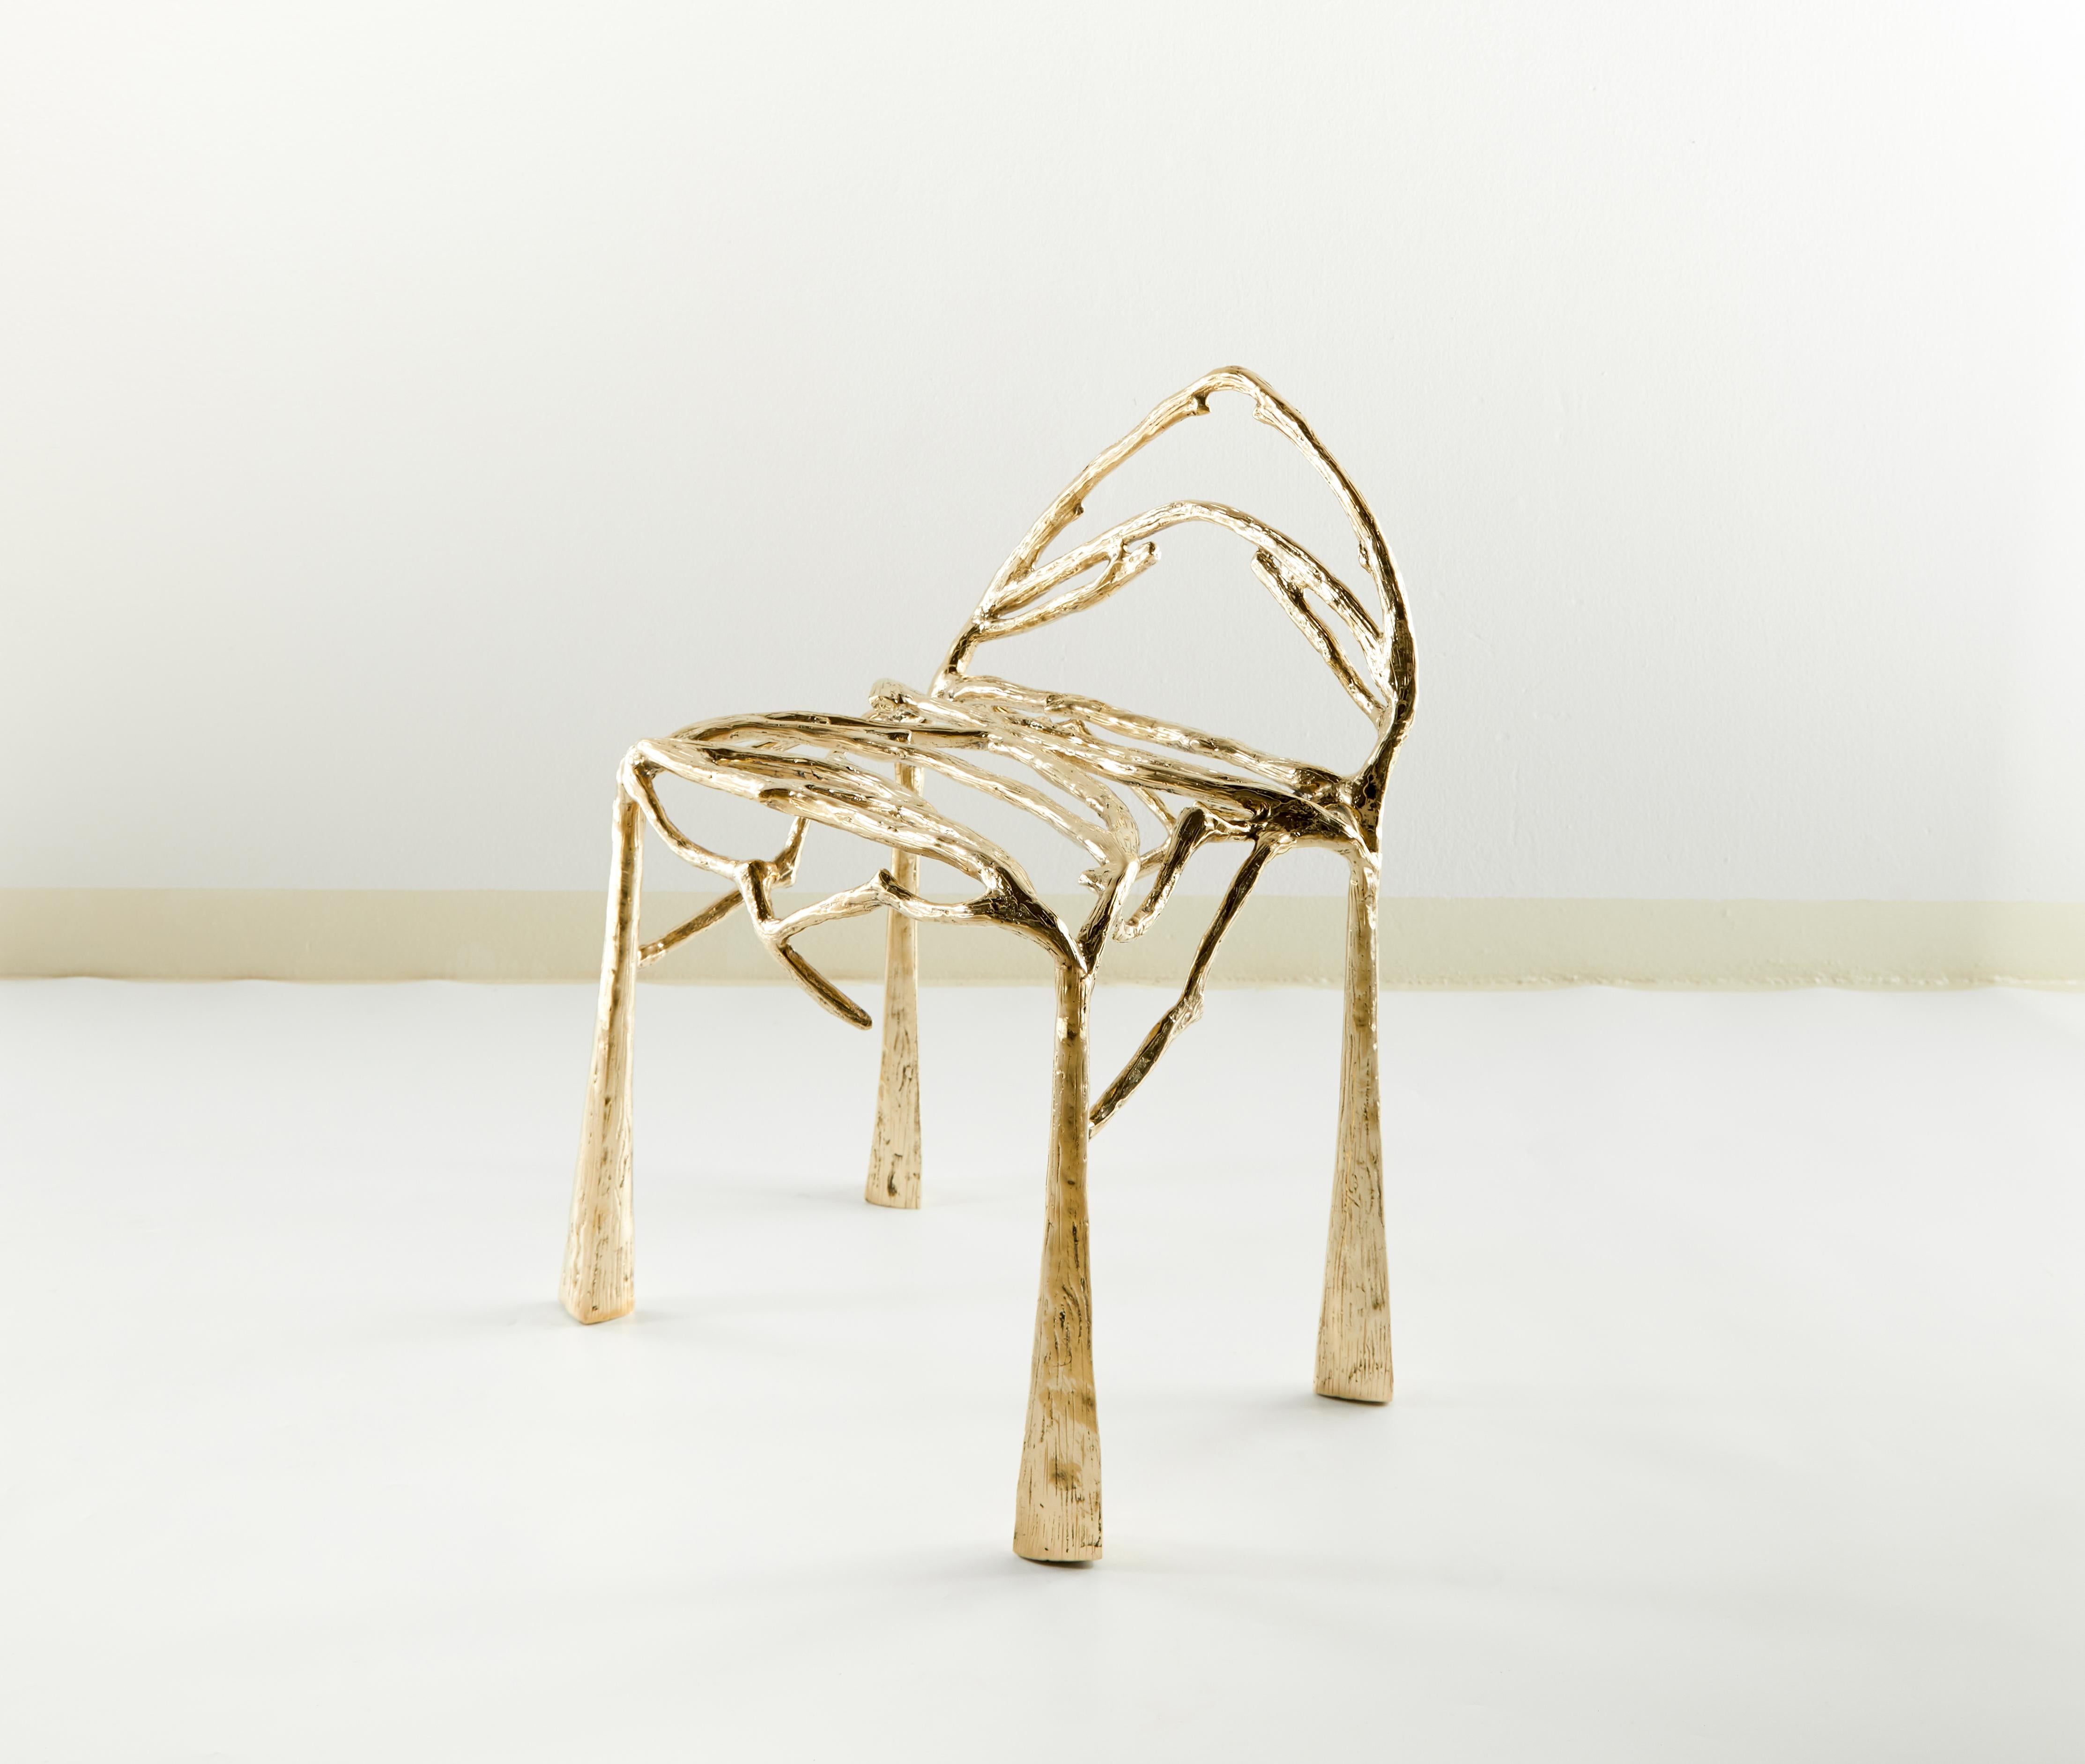 Stuhl von Masaya
Abmessungen: 65 x 53 x 50 cm
Messing
Mit den Händen geformt.
 